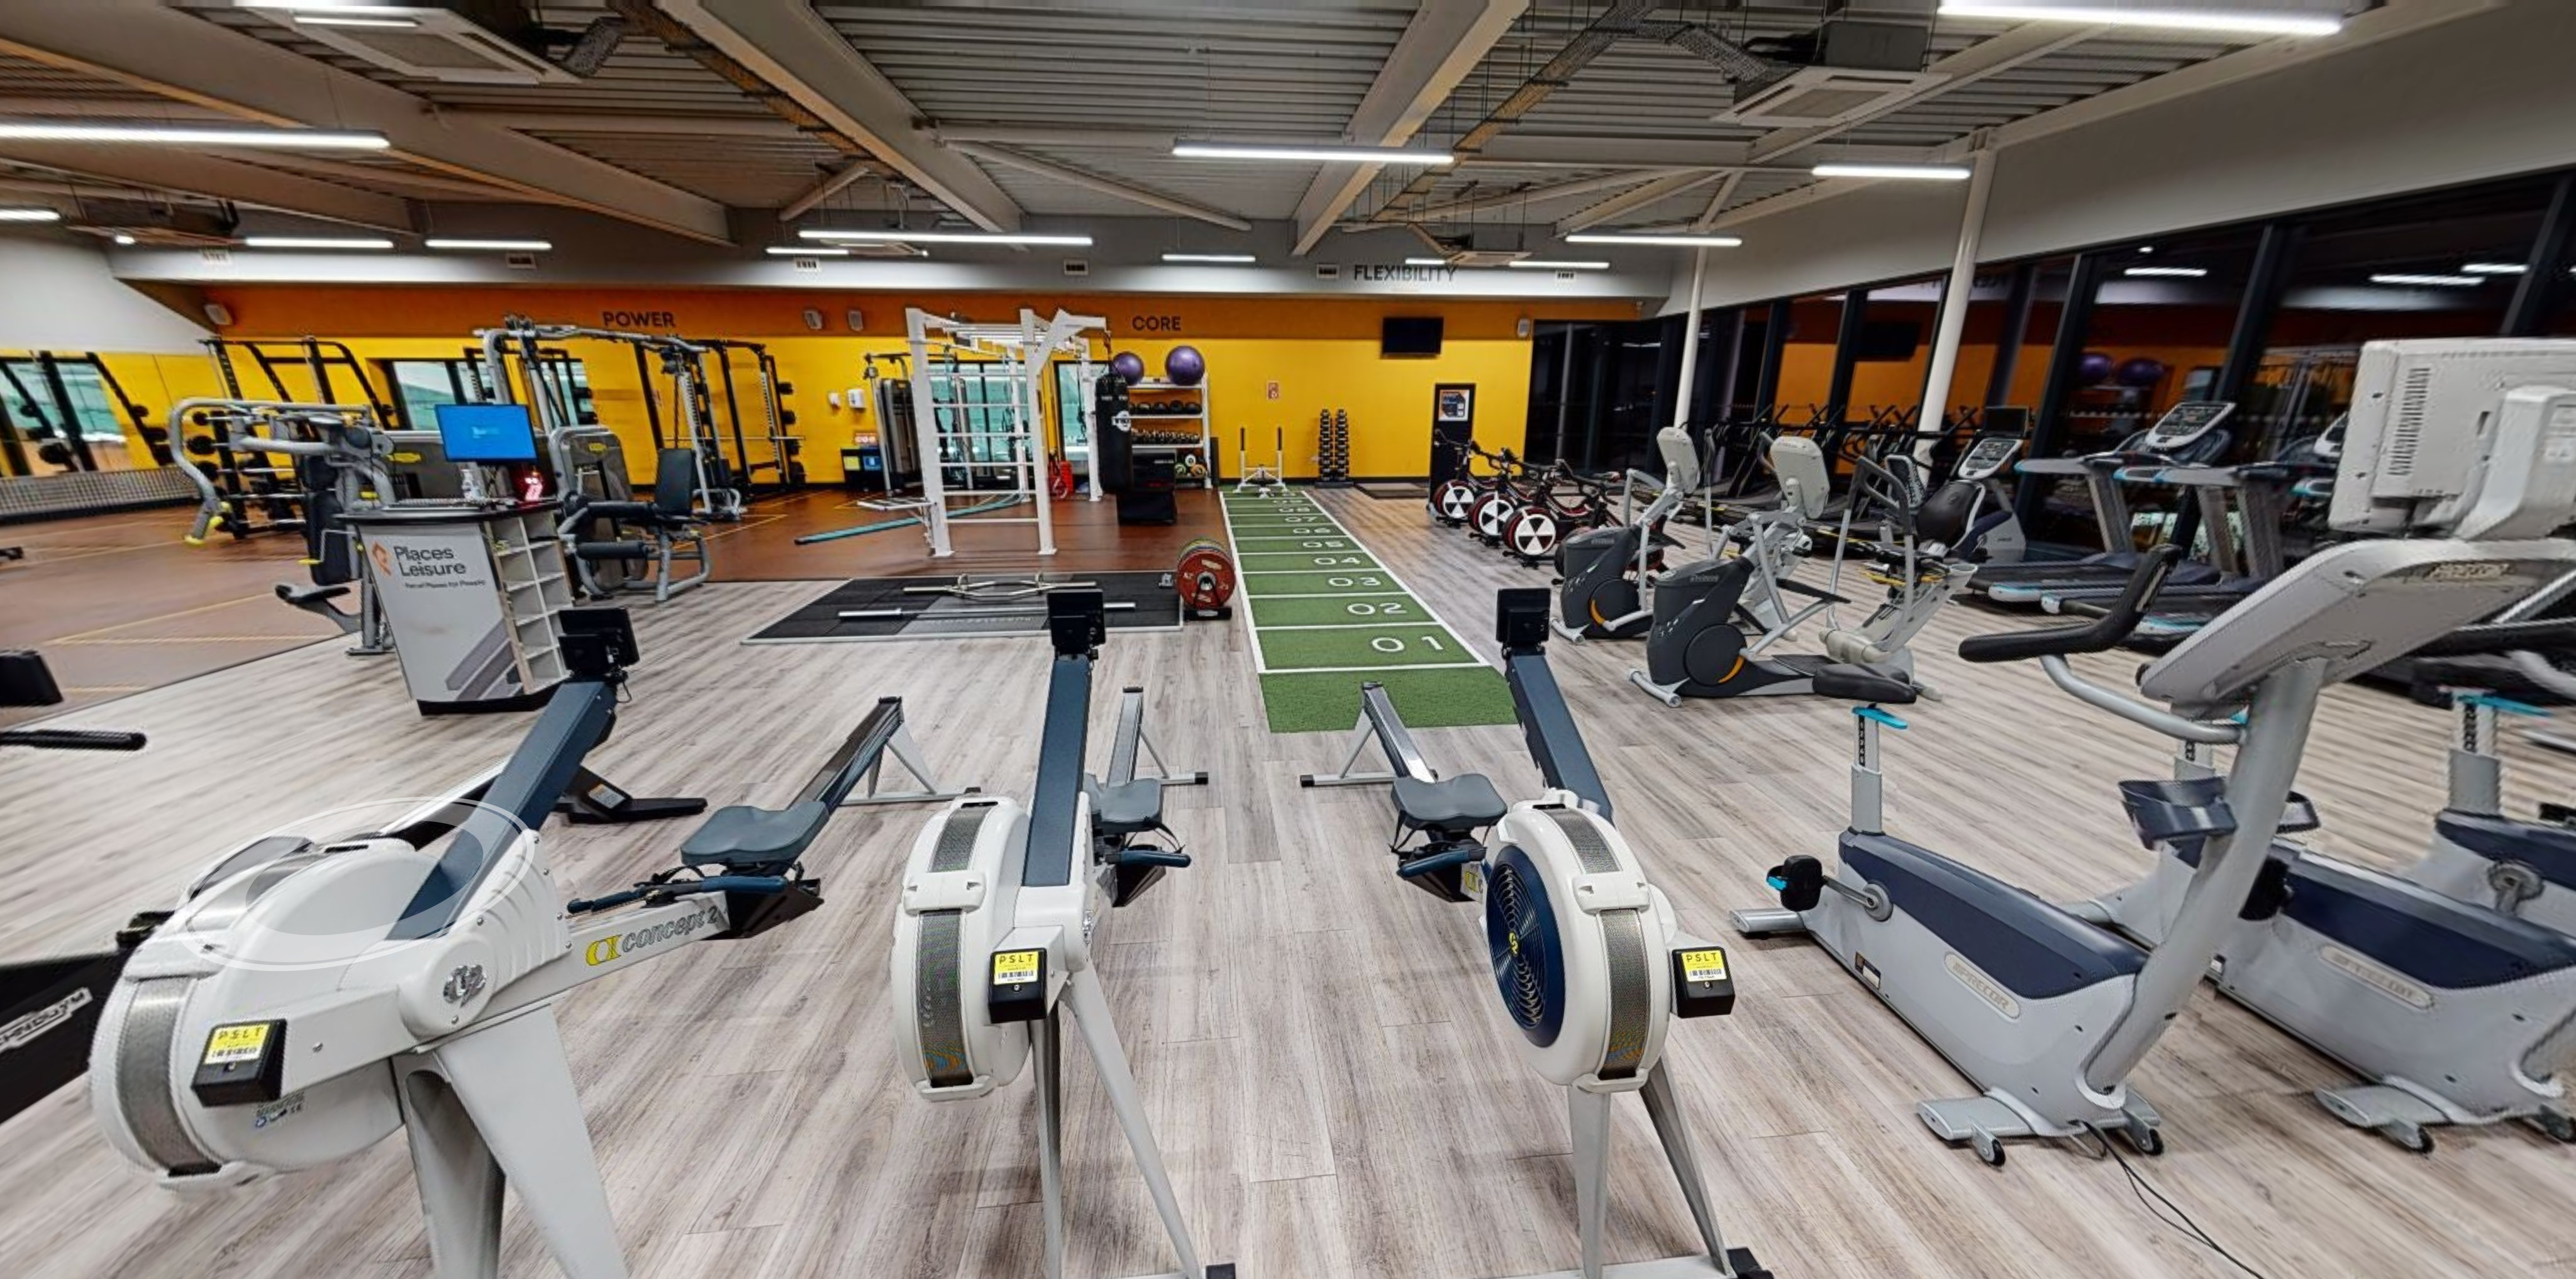 Gym at Waltham Abbey Leisure Centre Waltham Abbey Leisure Centre Waltham Abbey 01992 716733